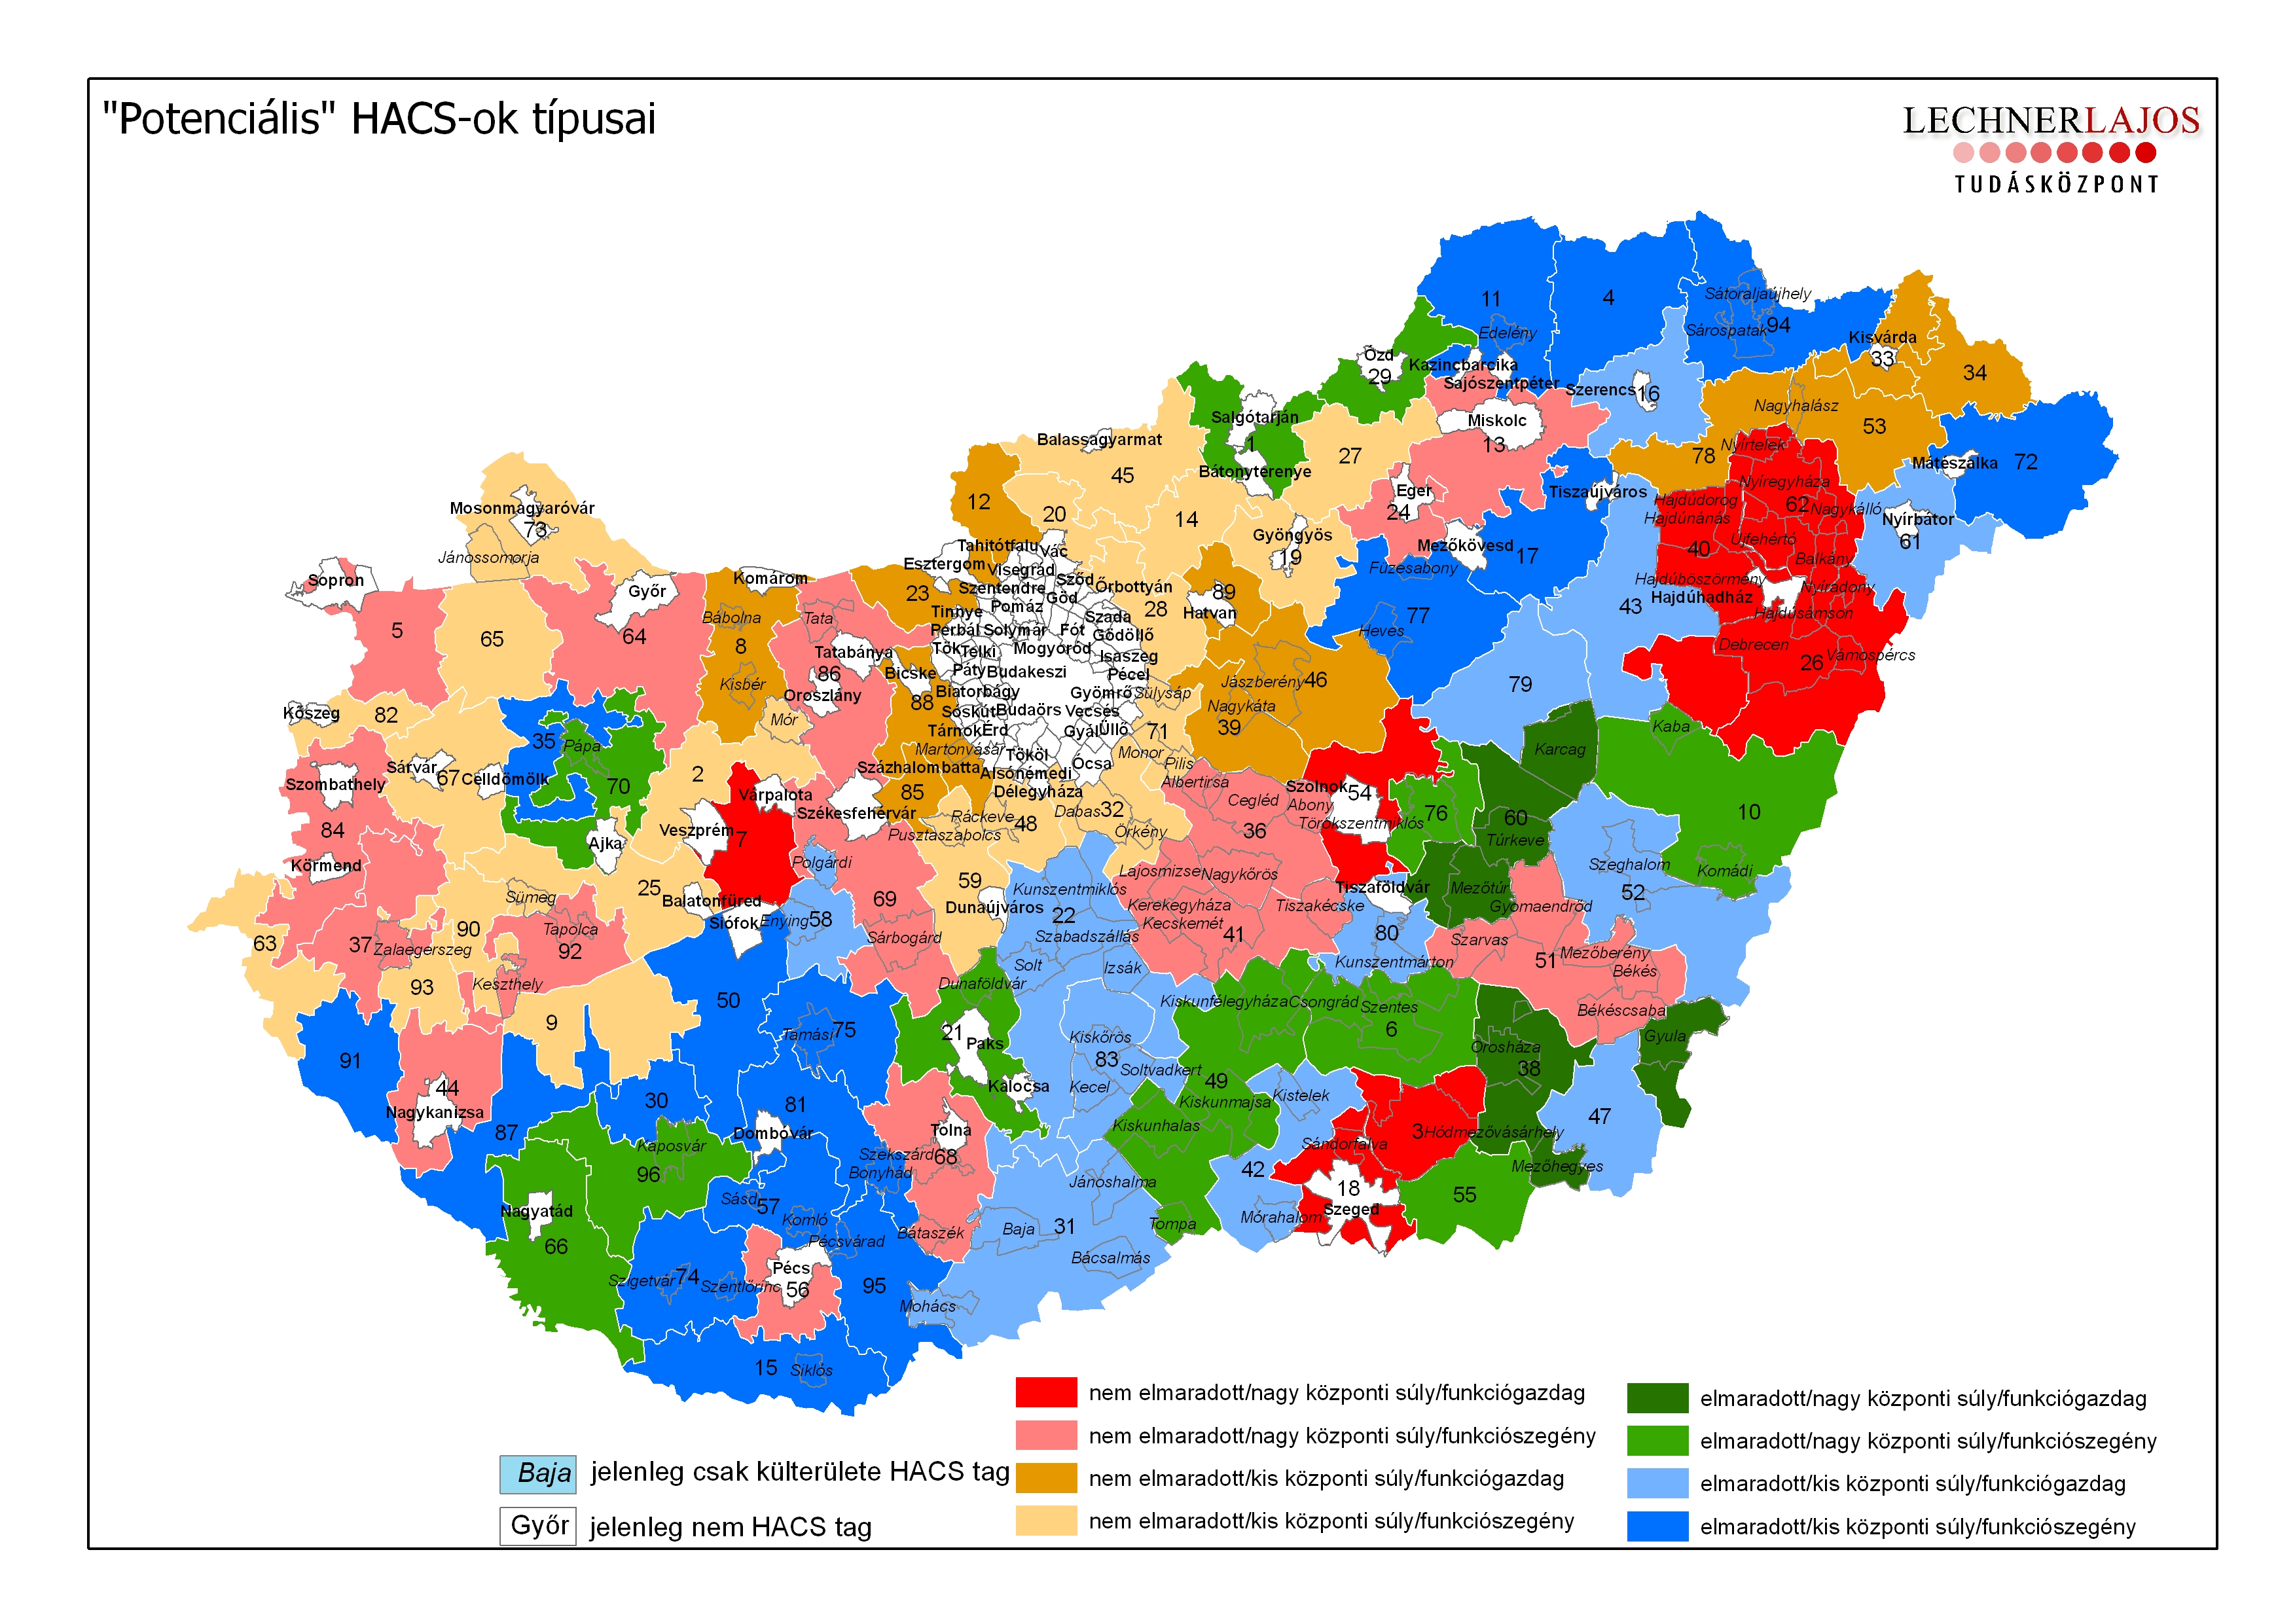 A LEADER helyi akciócsoportjainak (HACS) térképe